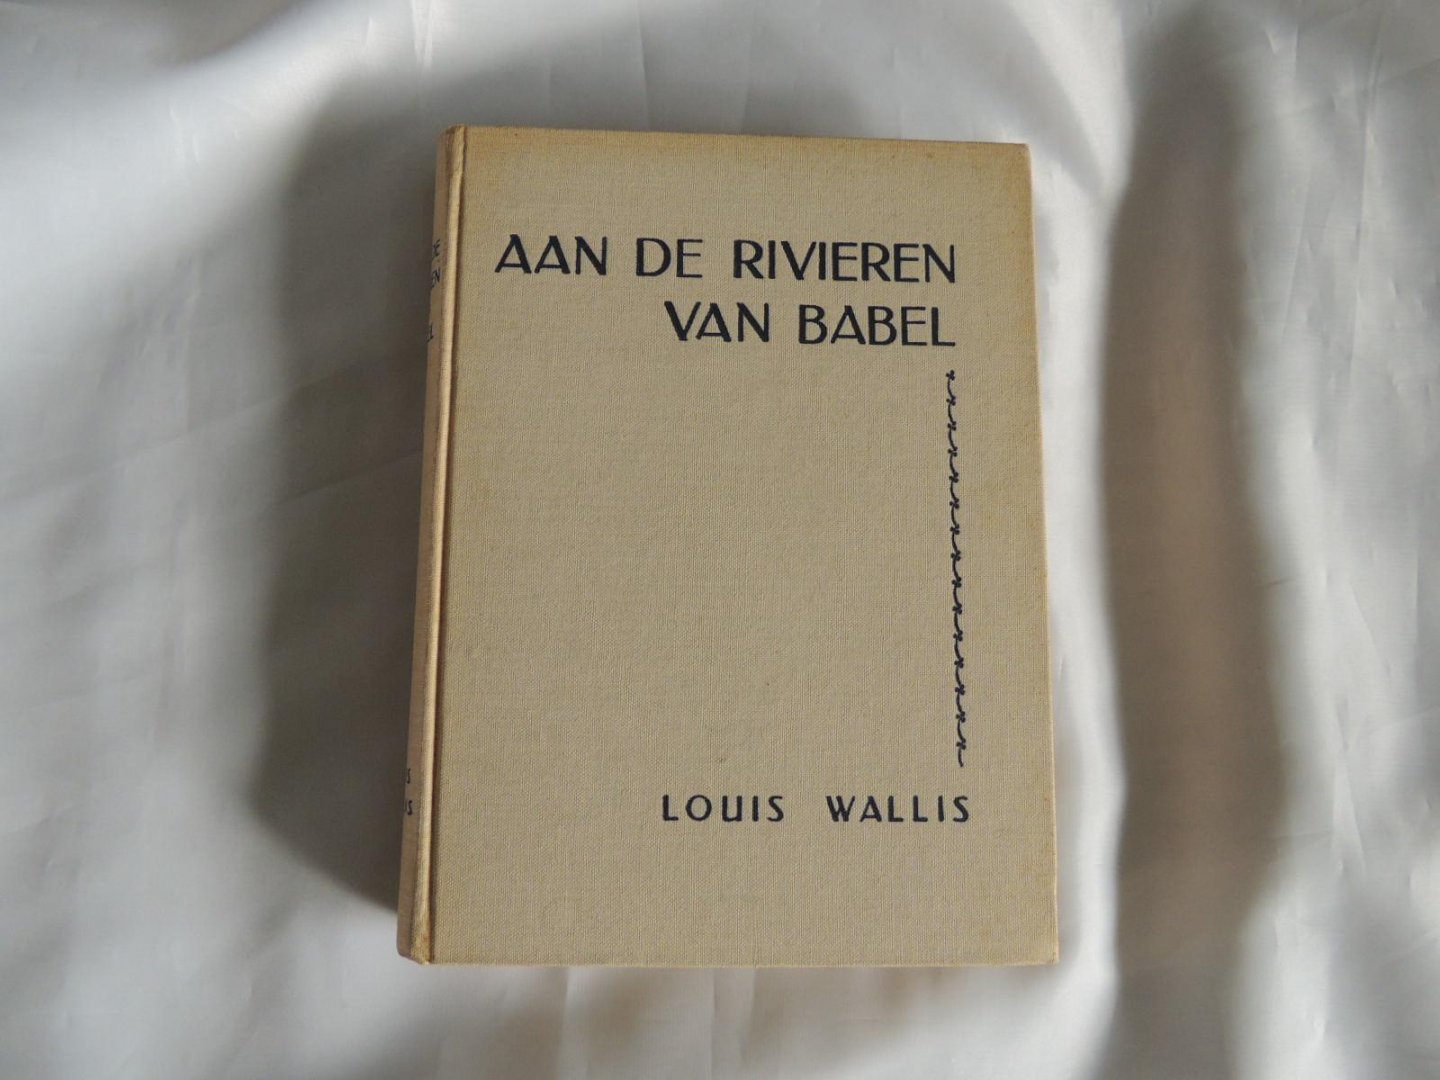 Wallis, Louis - M van der Hilst, pseud. van K. Papke - Aan de rivieren van Babel. Een geschiedenis uit Oud-Israël.